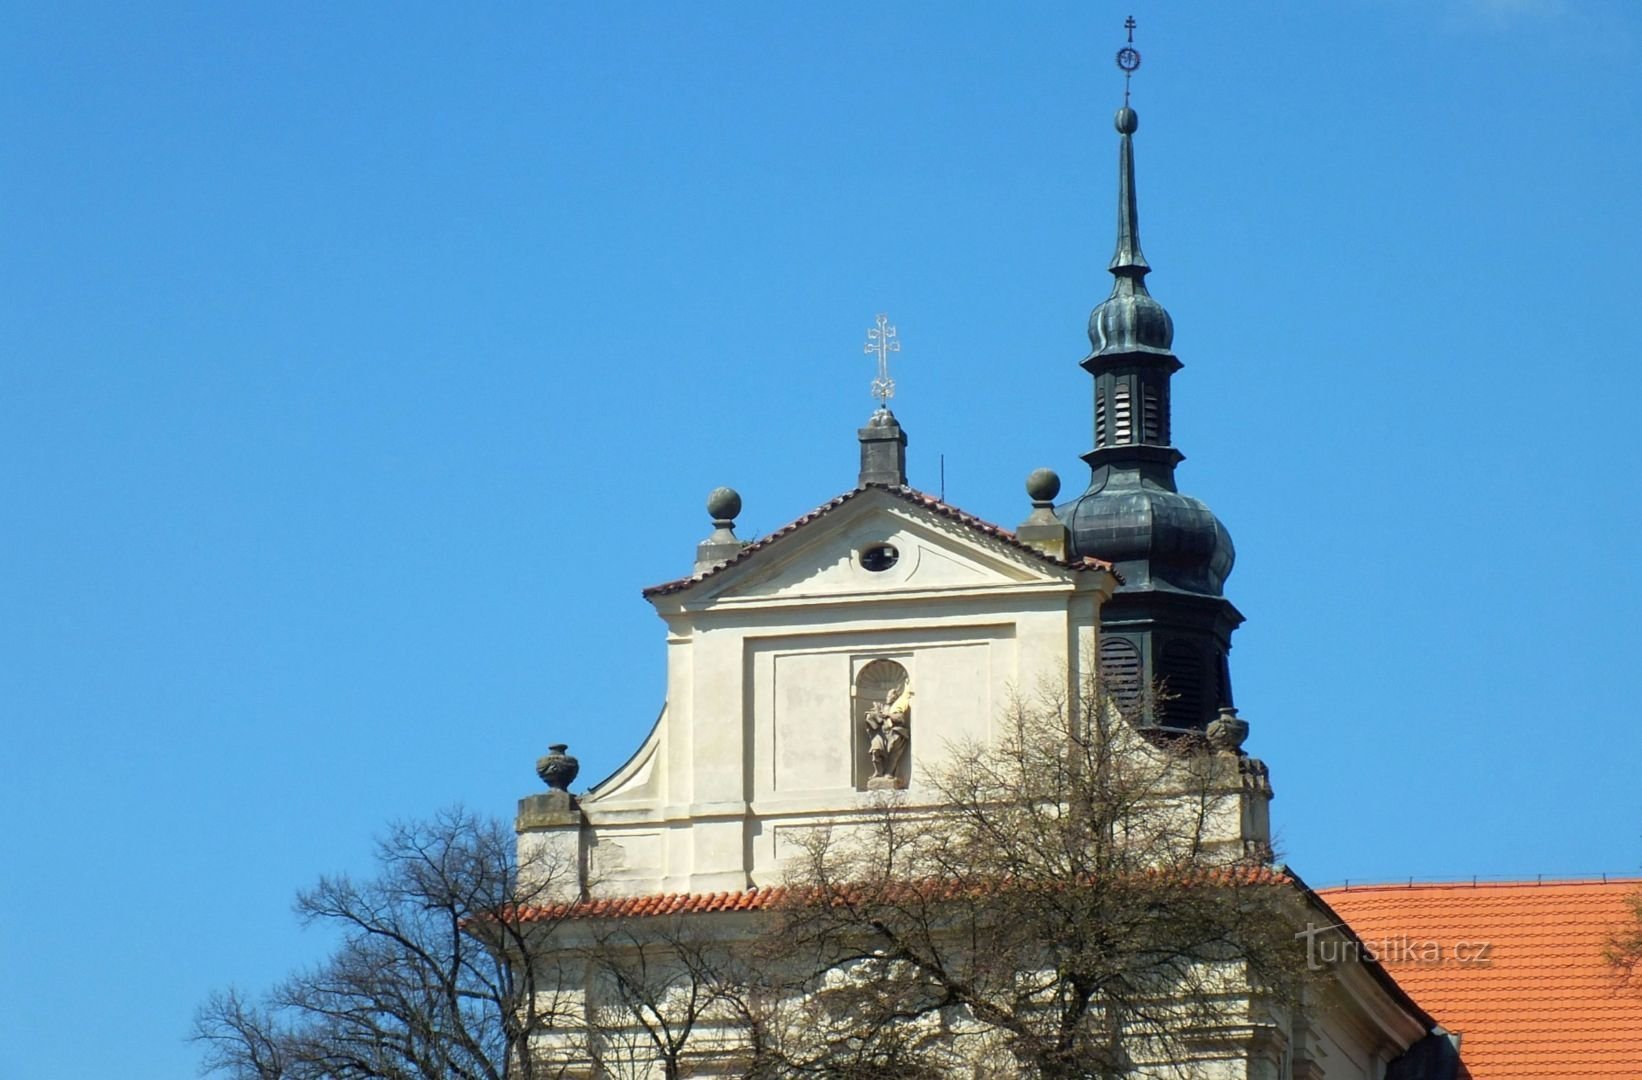 Tuchoměřice, église St. Accueillir